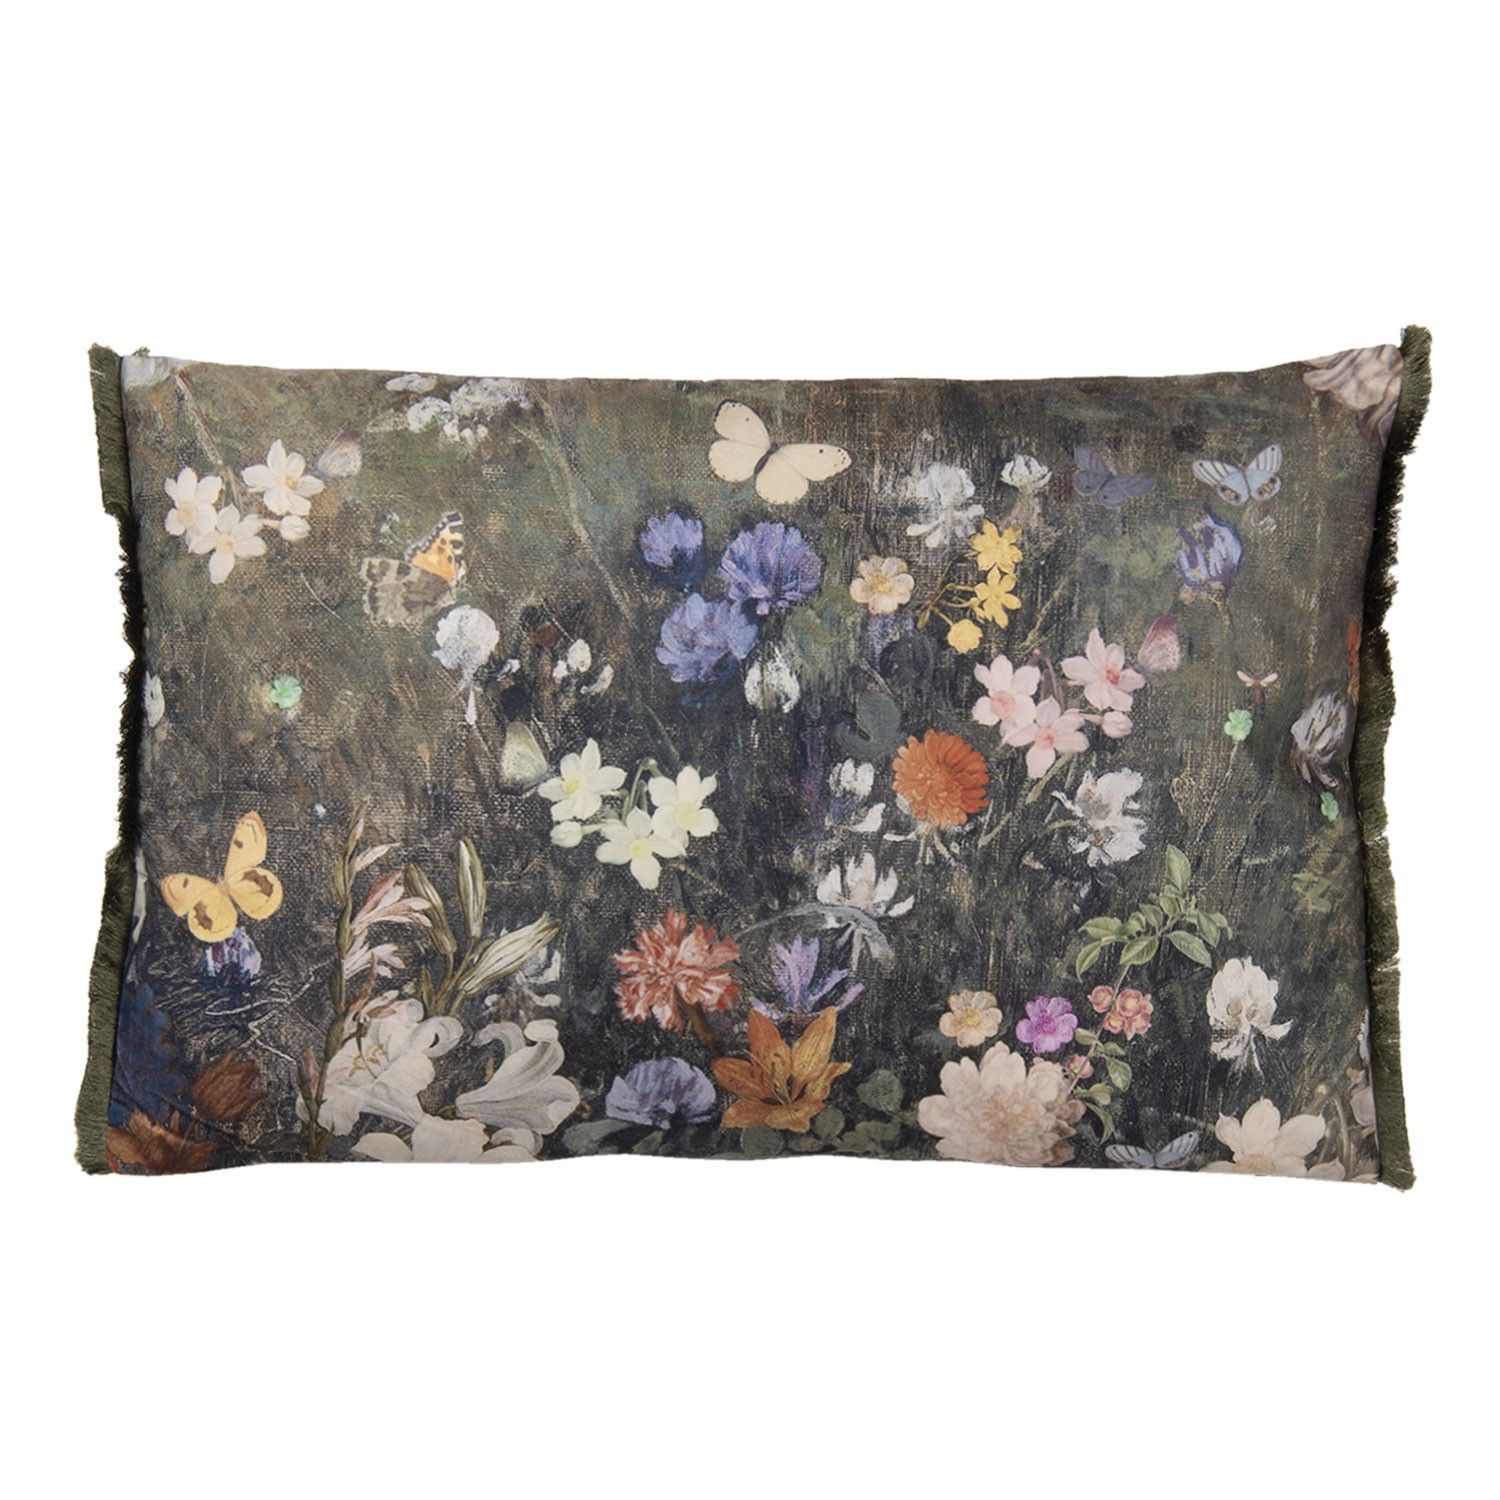 Vintage barevný polštář s květy a motýly  - 60*40 cm - LaHome - vintage dekorace